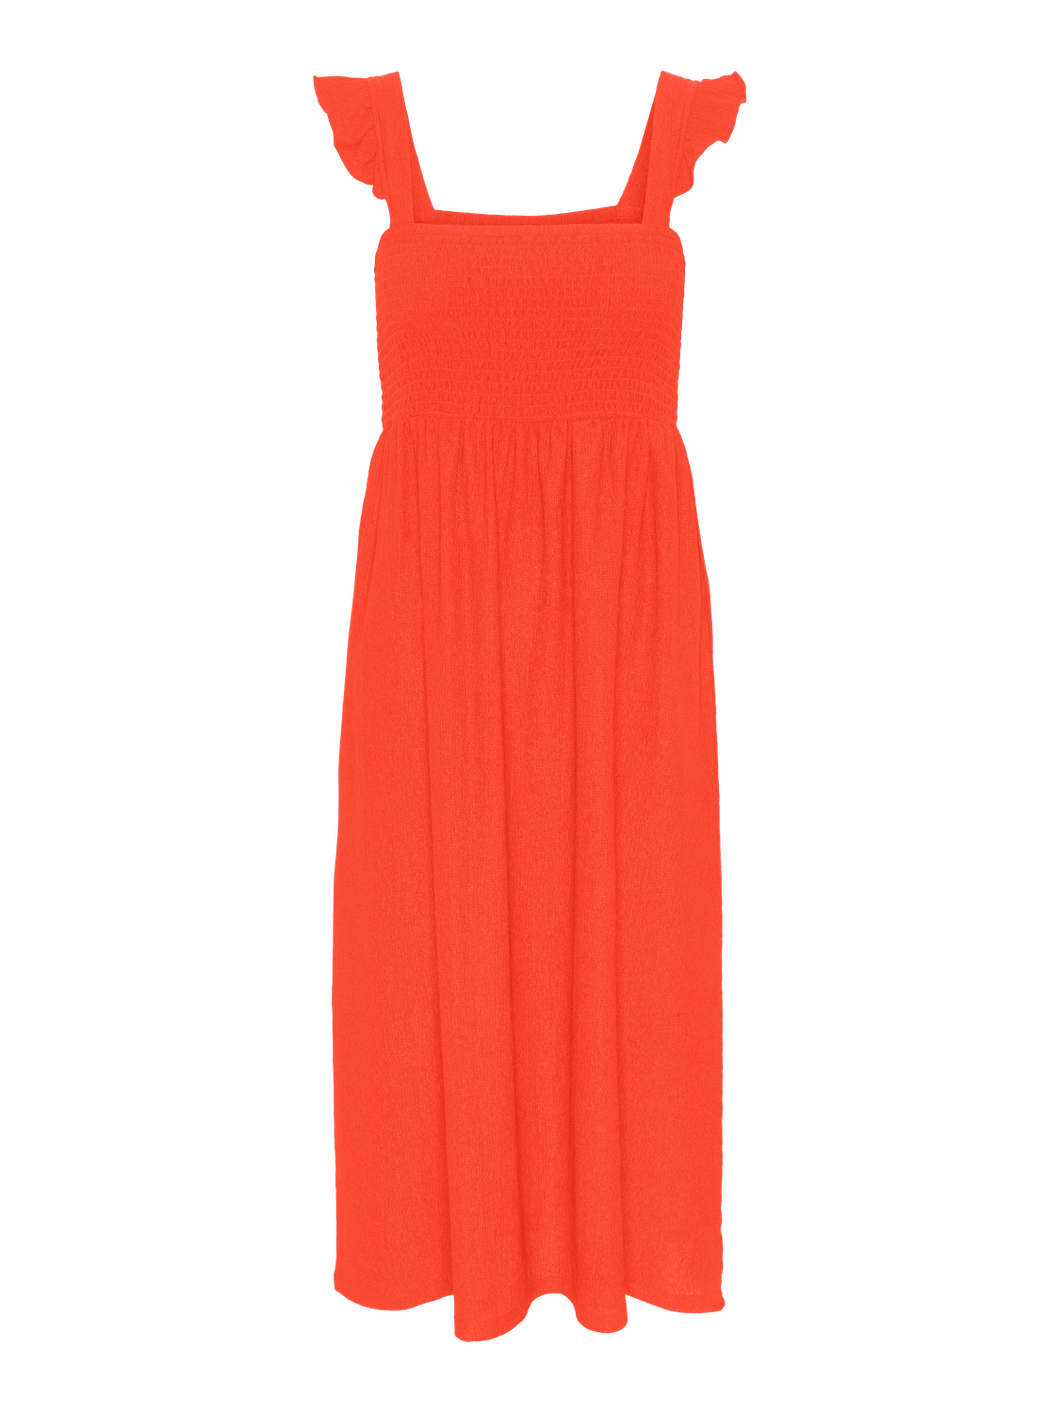 PCLUNA Dress - Poinciana